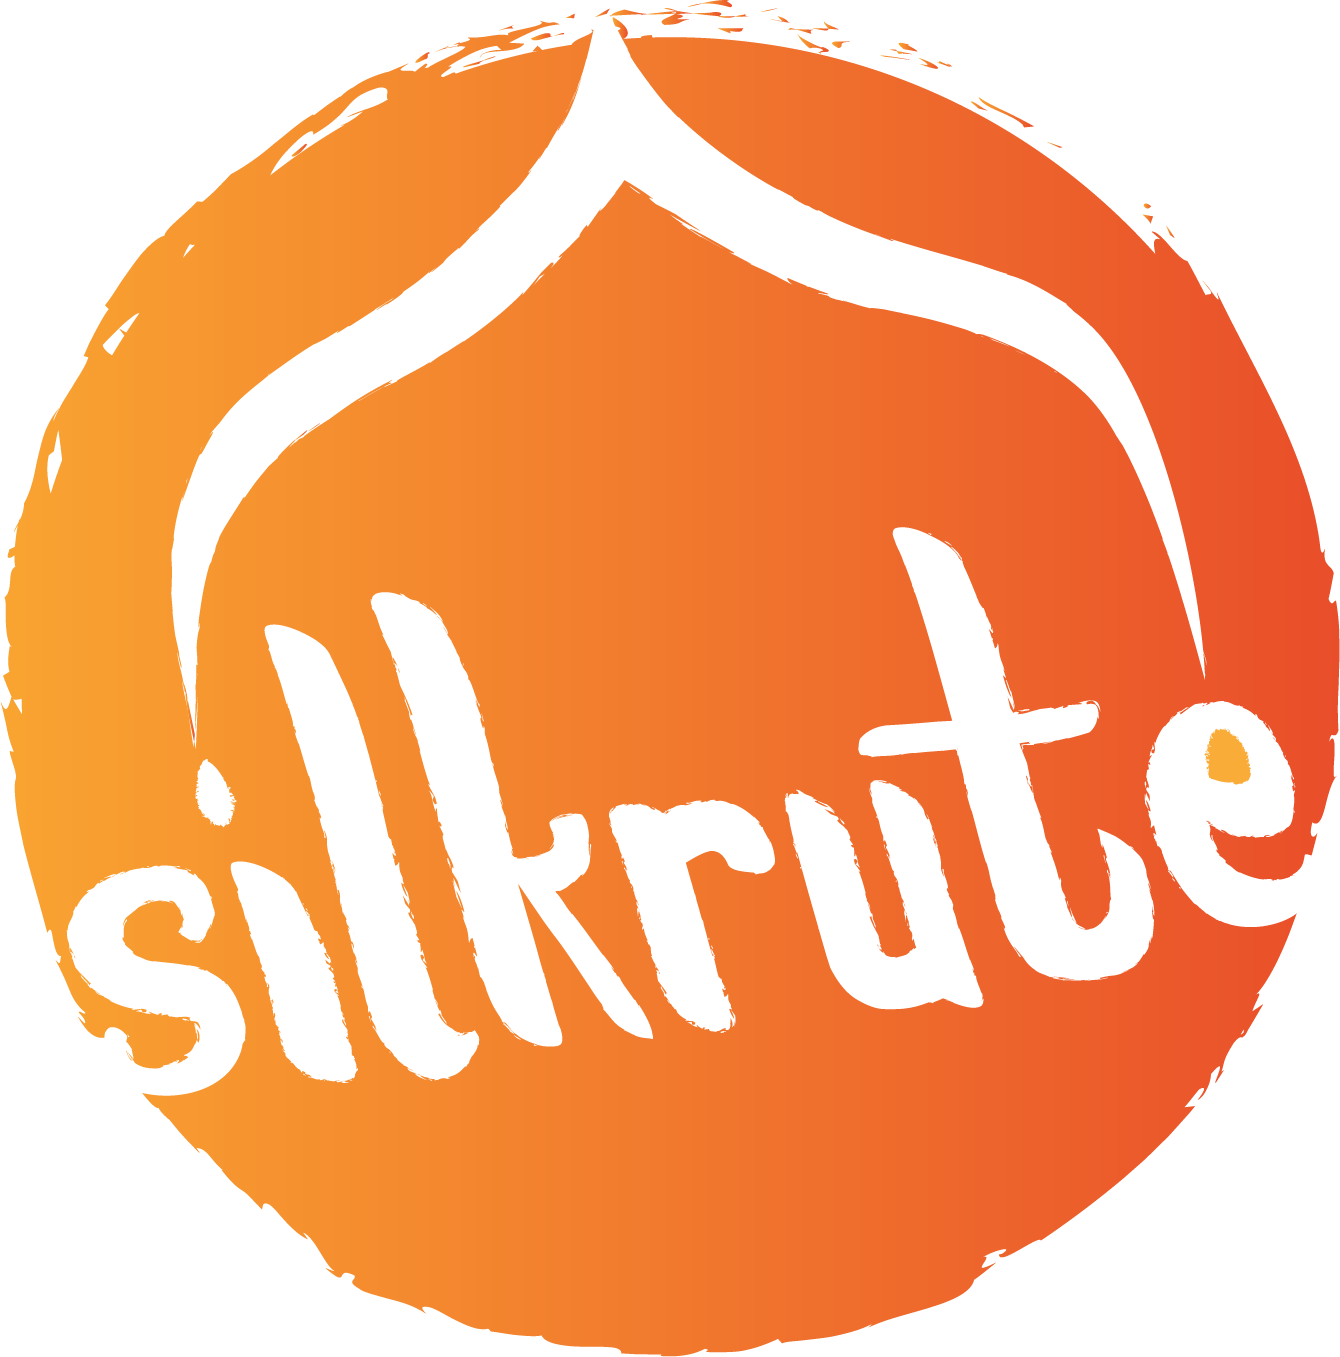 Silkrute's Logo